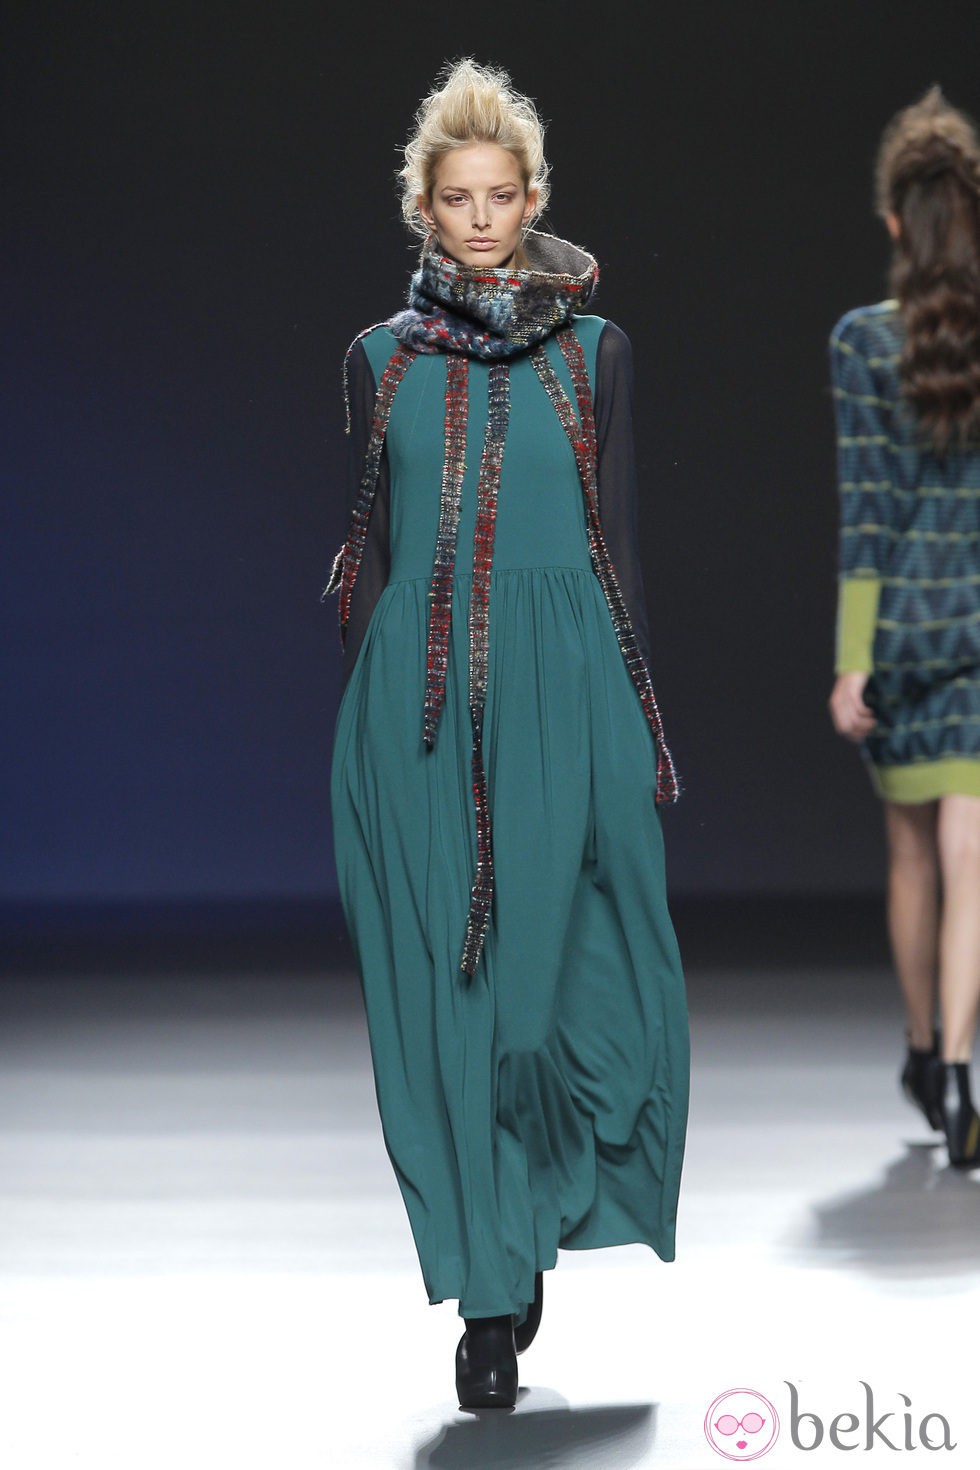 Vestido verde largo de la colección otoño/invierno 2013/2014 de Sara Coleman en Madrid Fashion Week